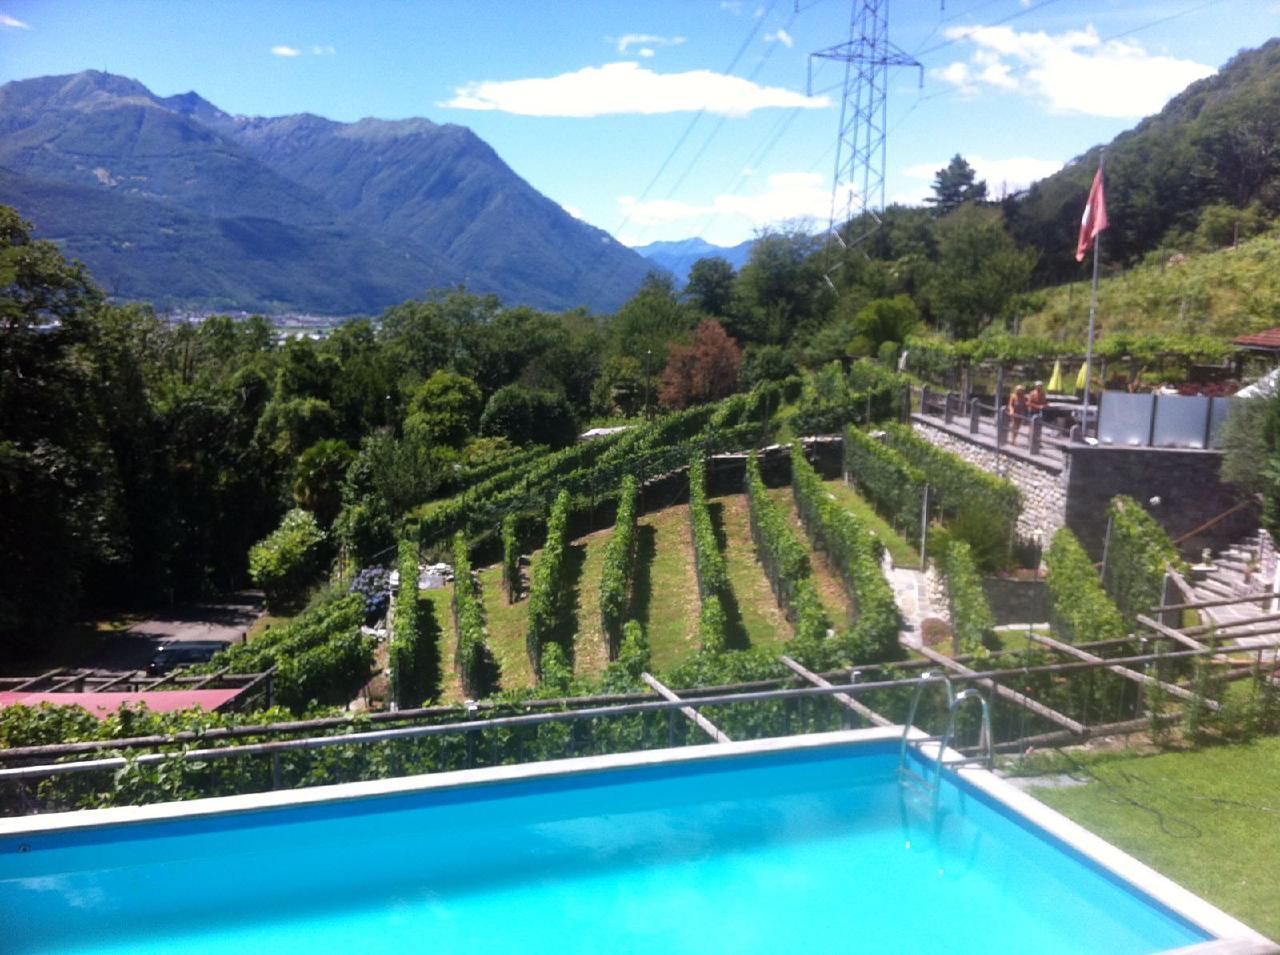 Ferienwohnung mit Pool Ferienwohnung in der Schweiz